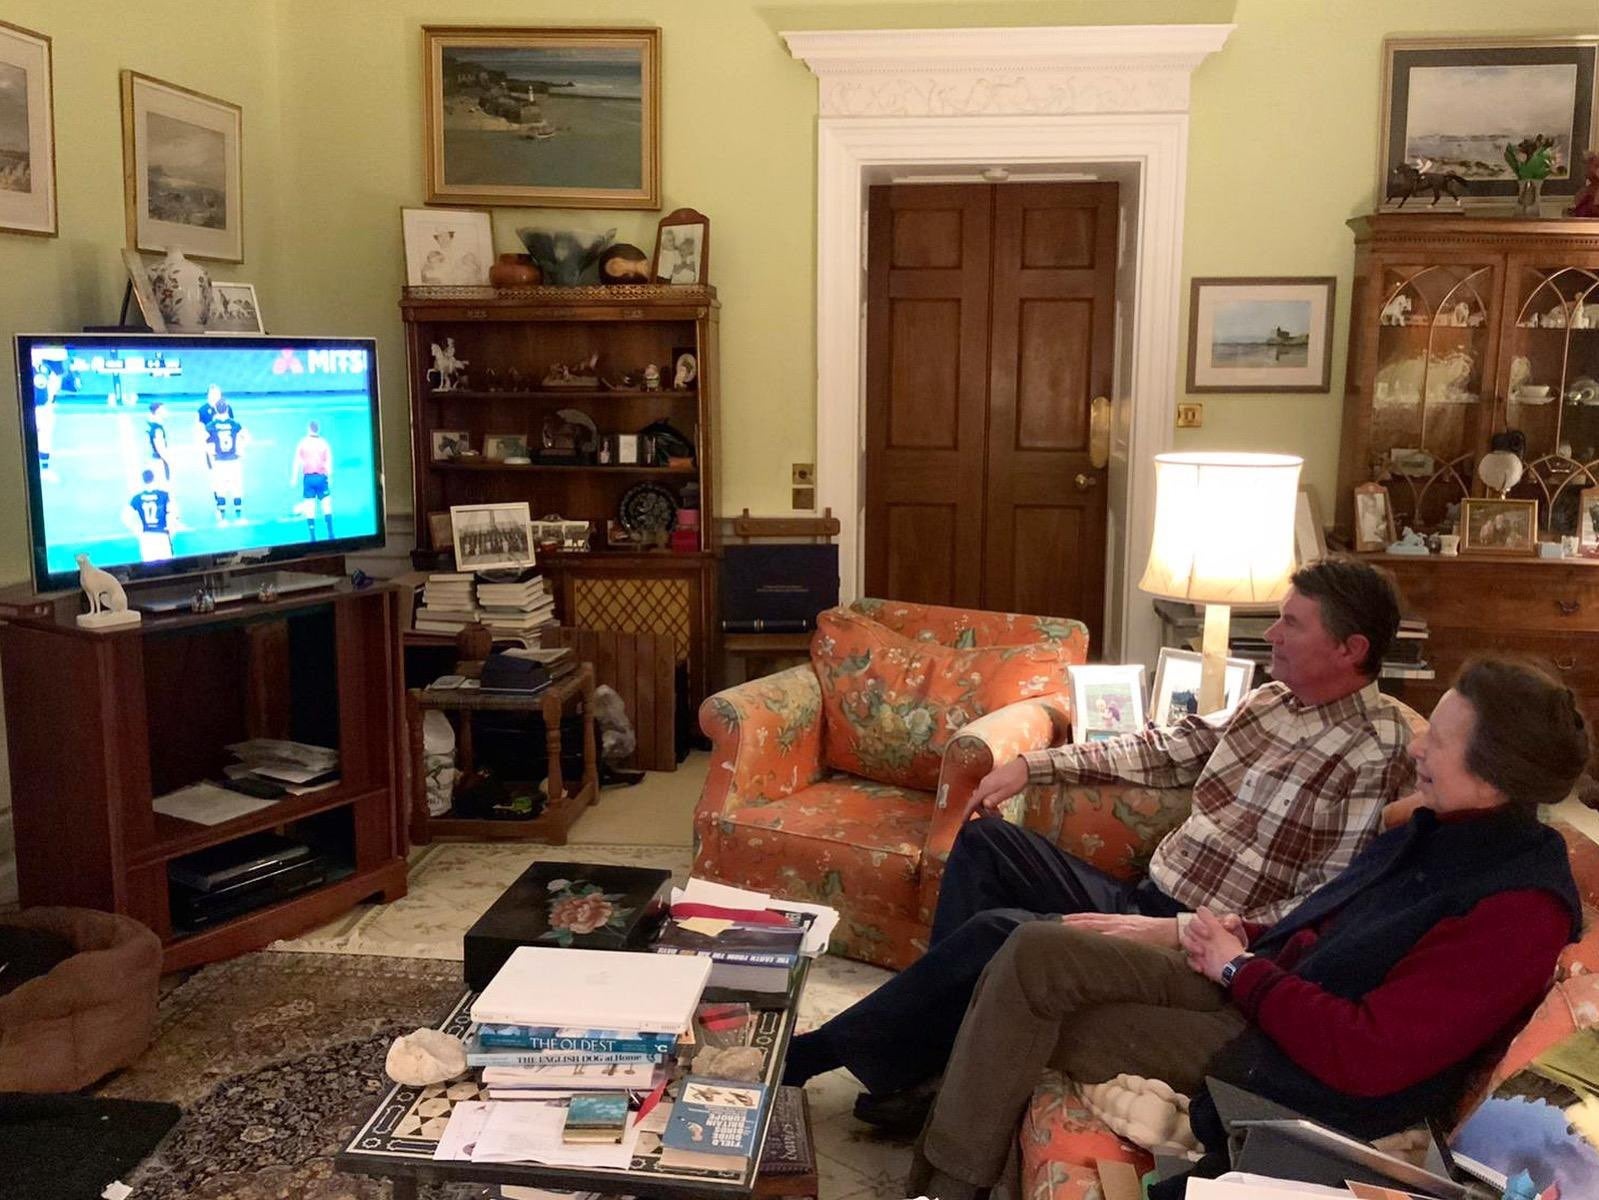 La princesa y su esposo viendo el partido de rugby de la Copa Calcuta entre Inglaterra y Escocia